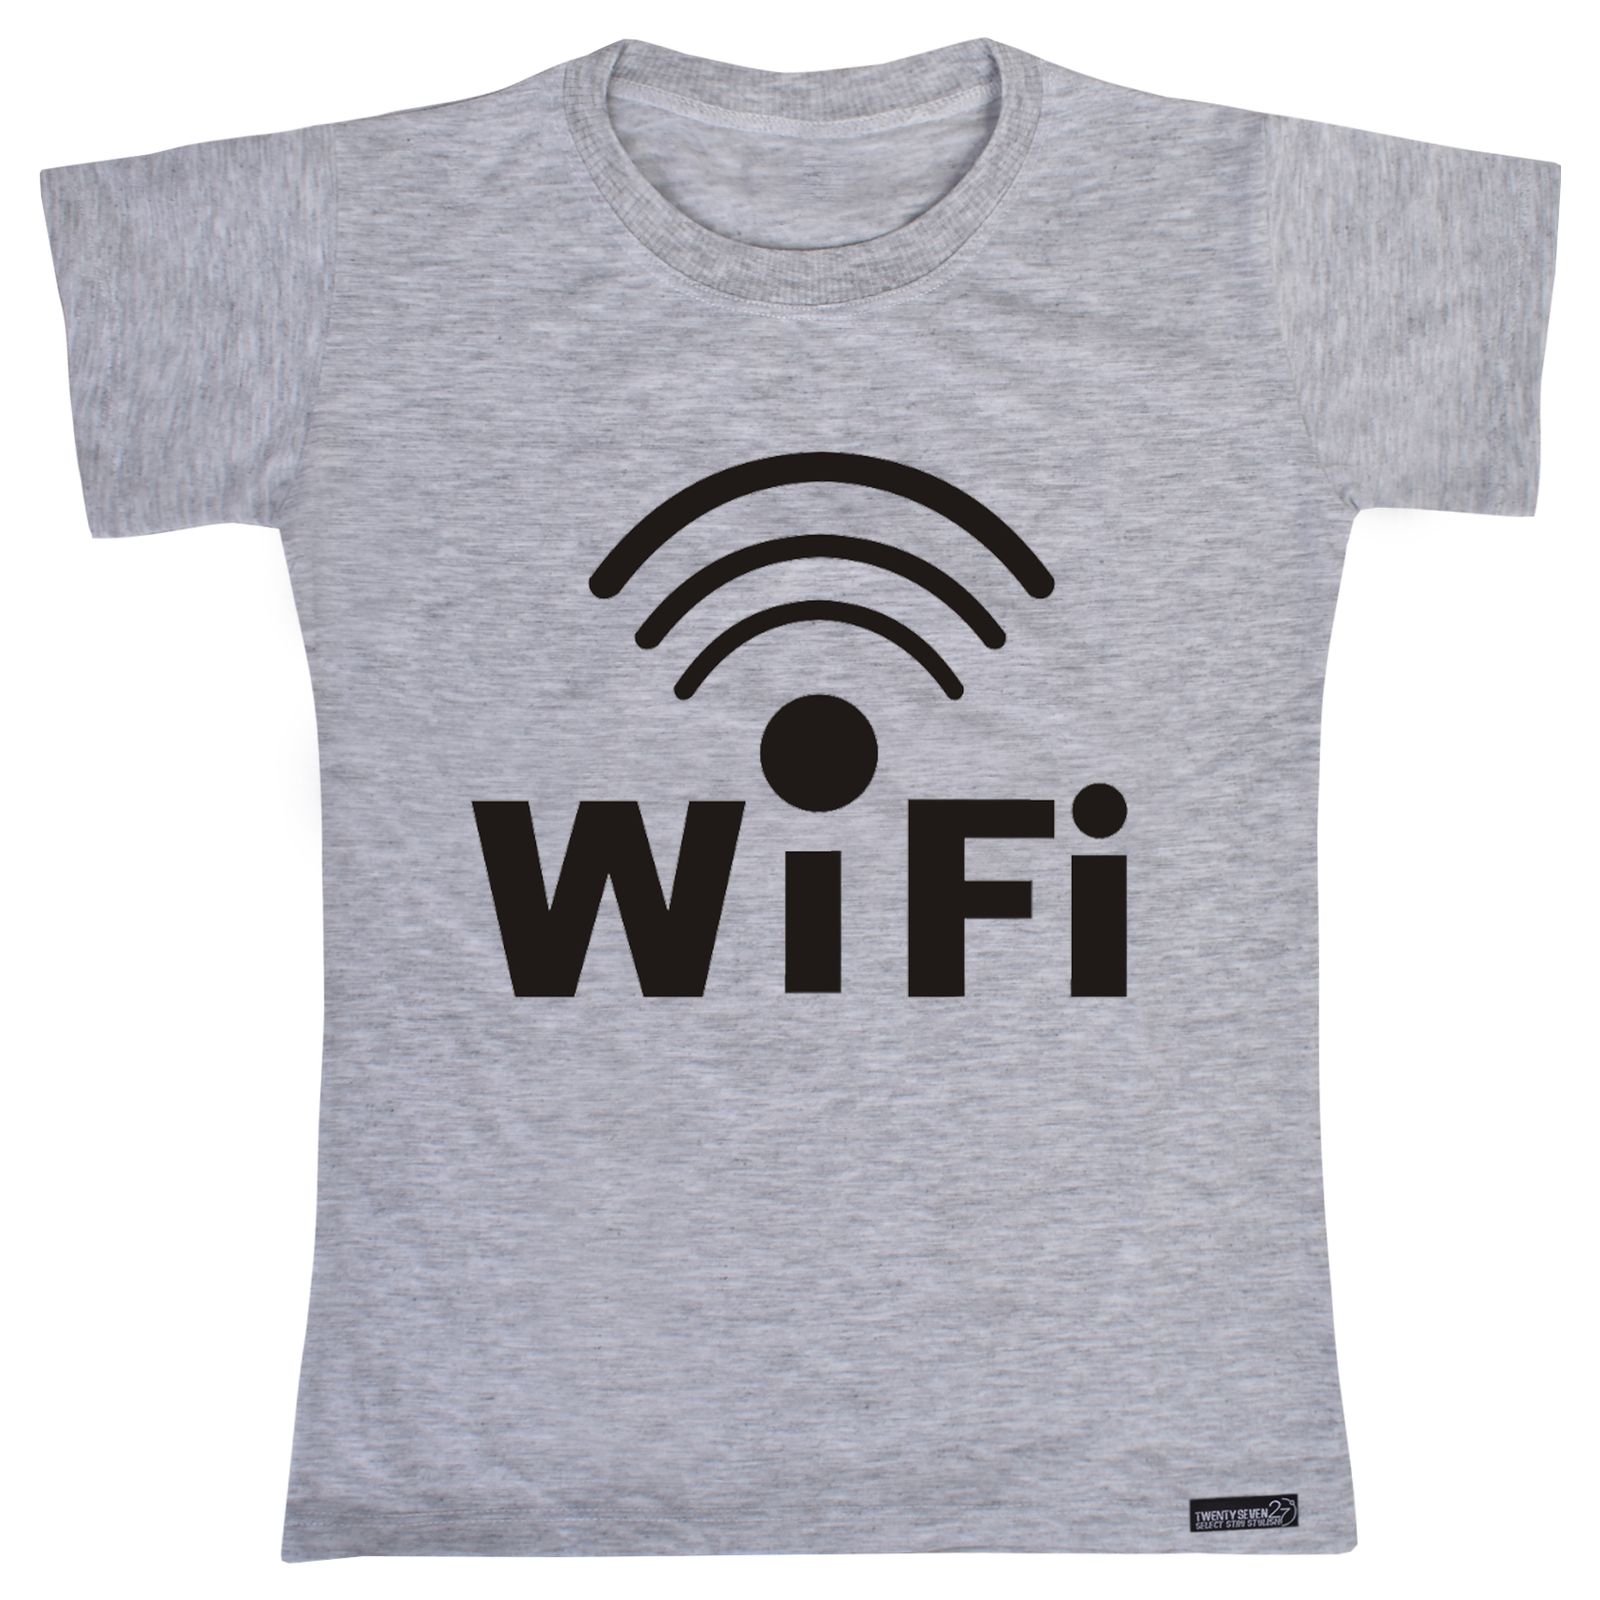 تی شرت آستین کوتاه دخترانه 27 مدل WiFi کد MH868 -  - 1